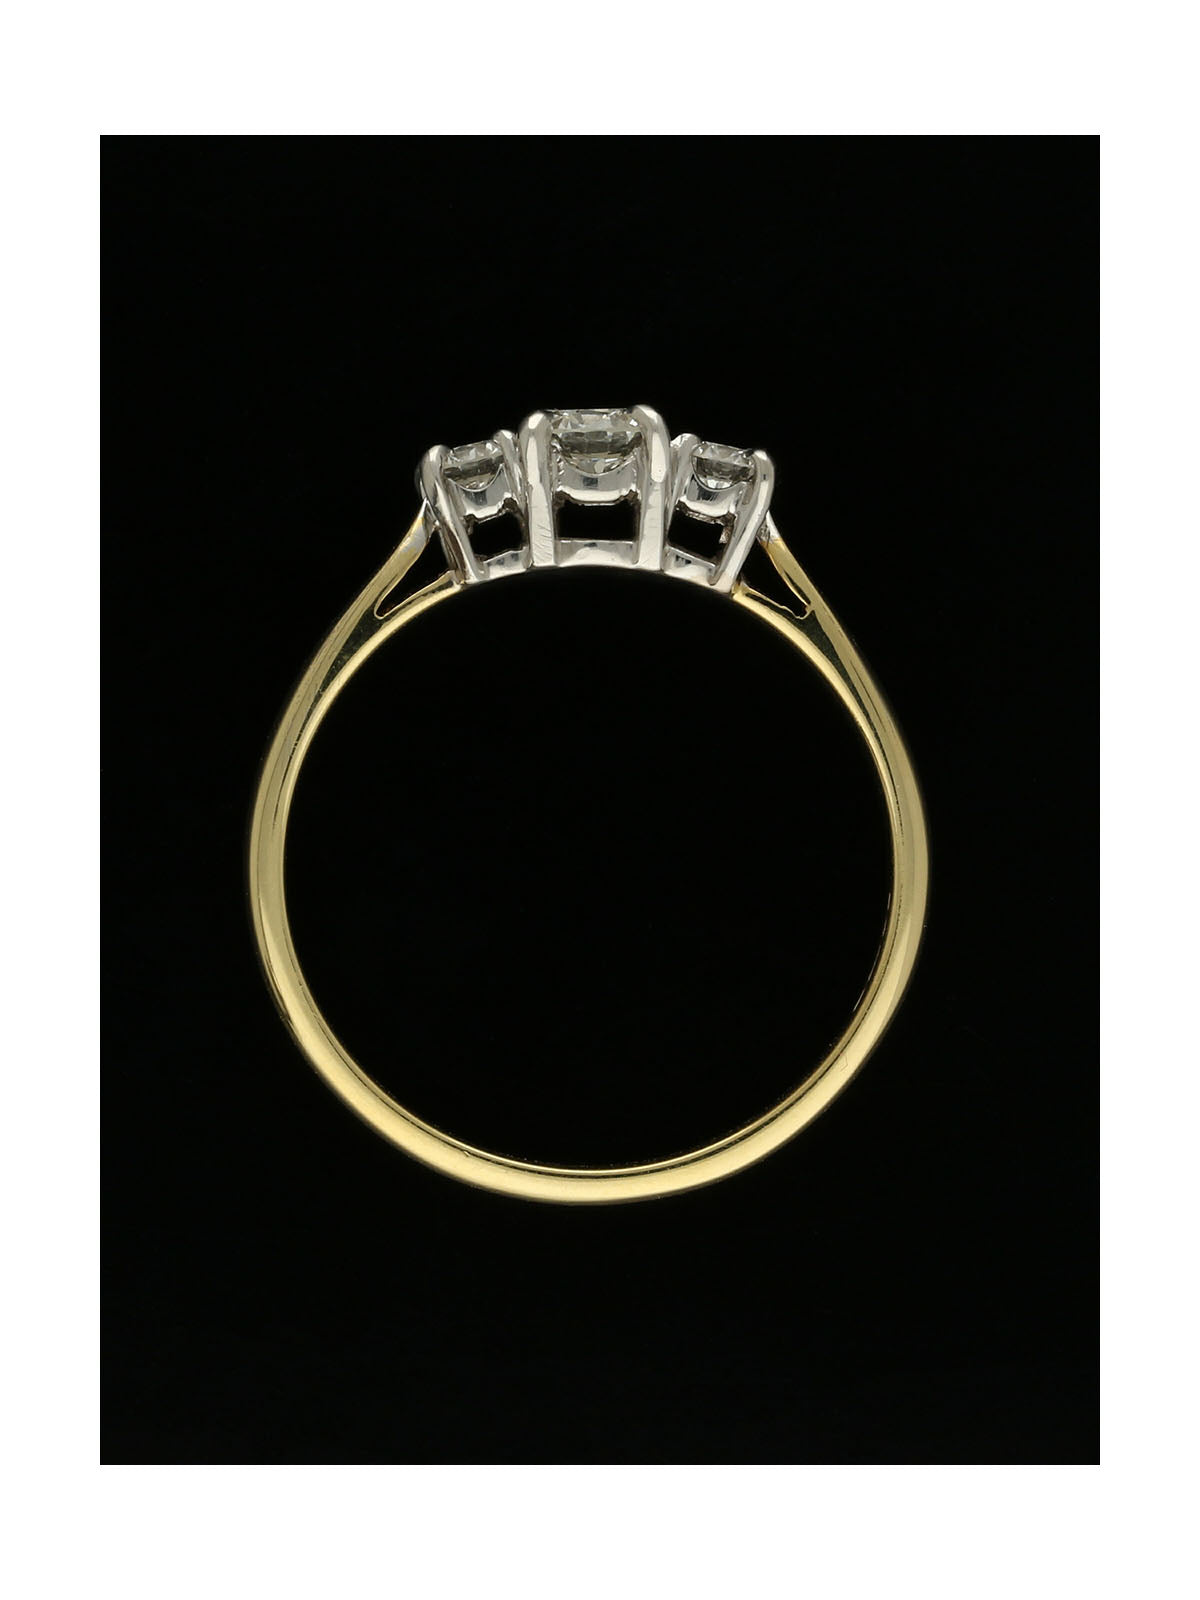 Diamond Three Stone Ring in 18ct Yellow & White Gold